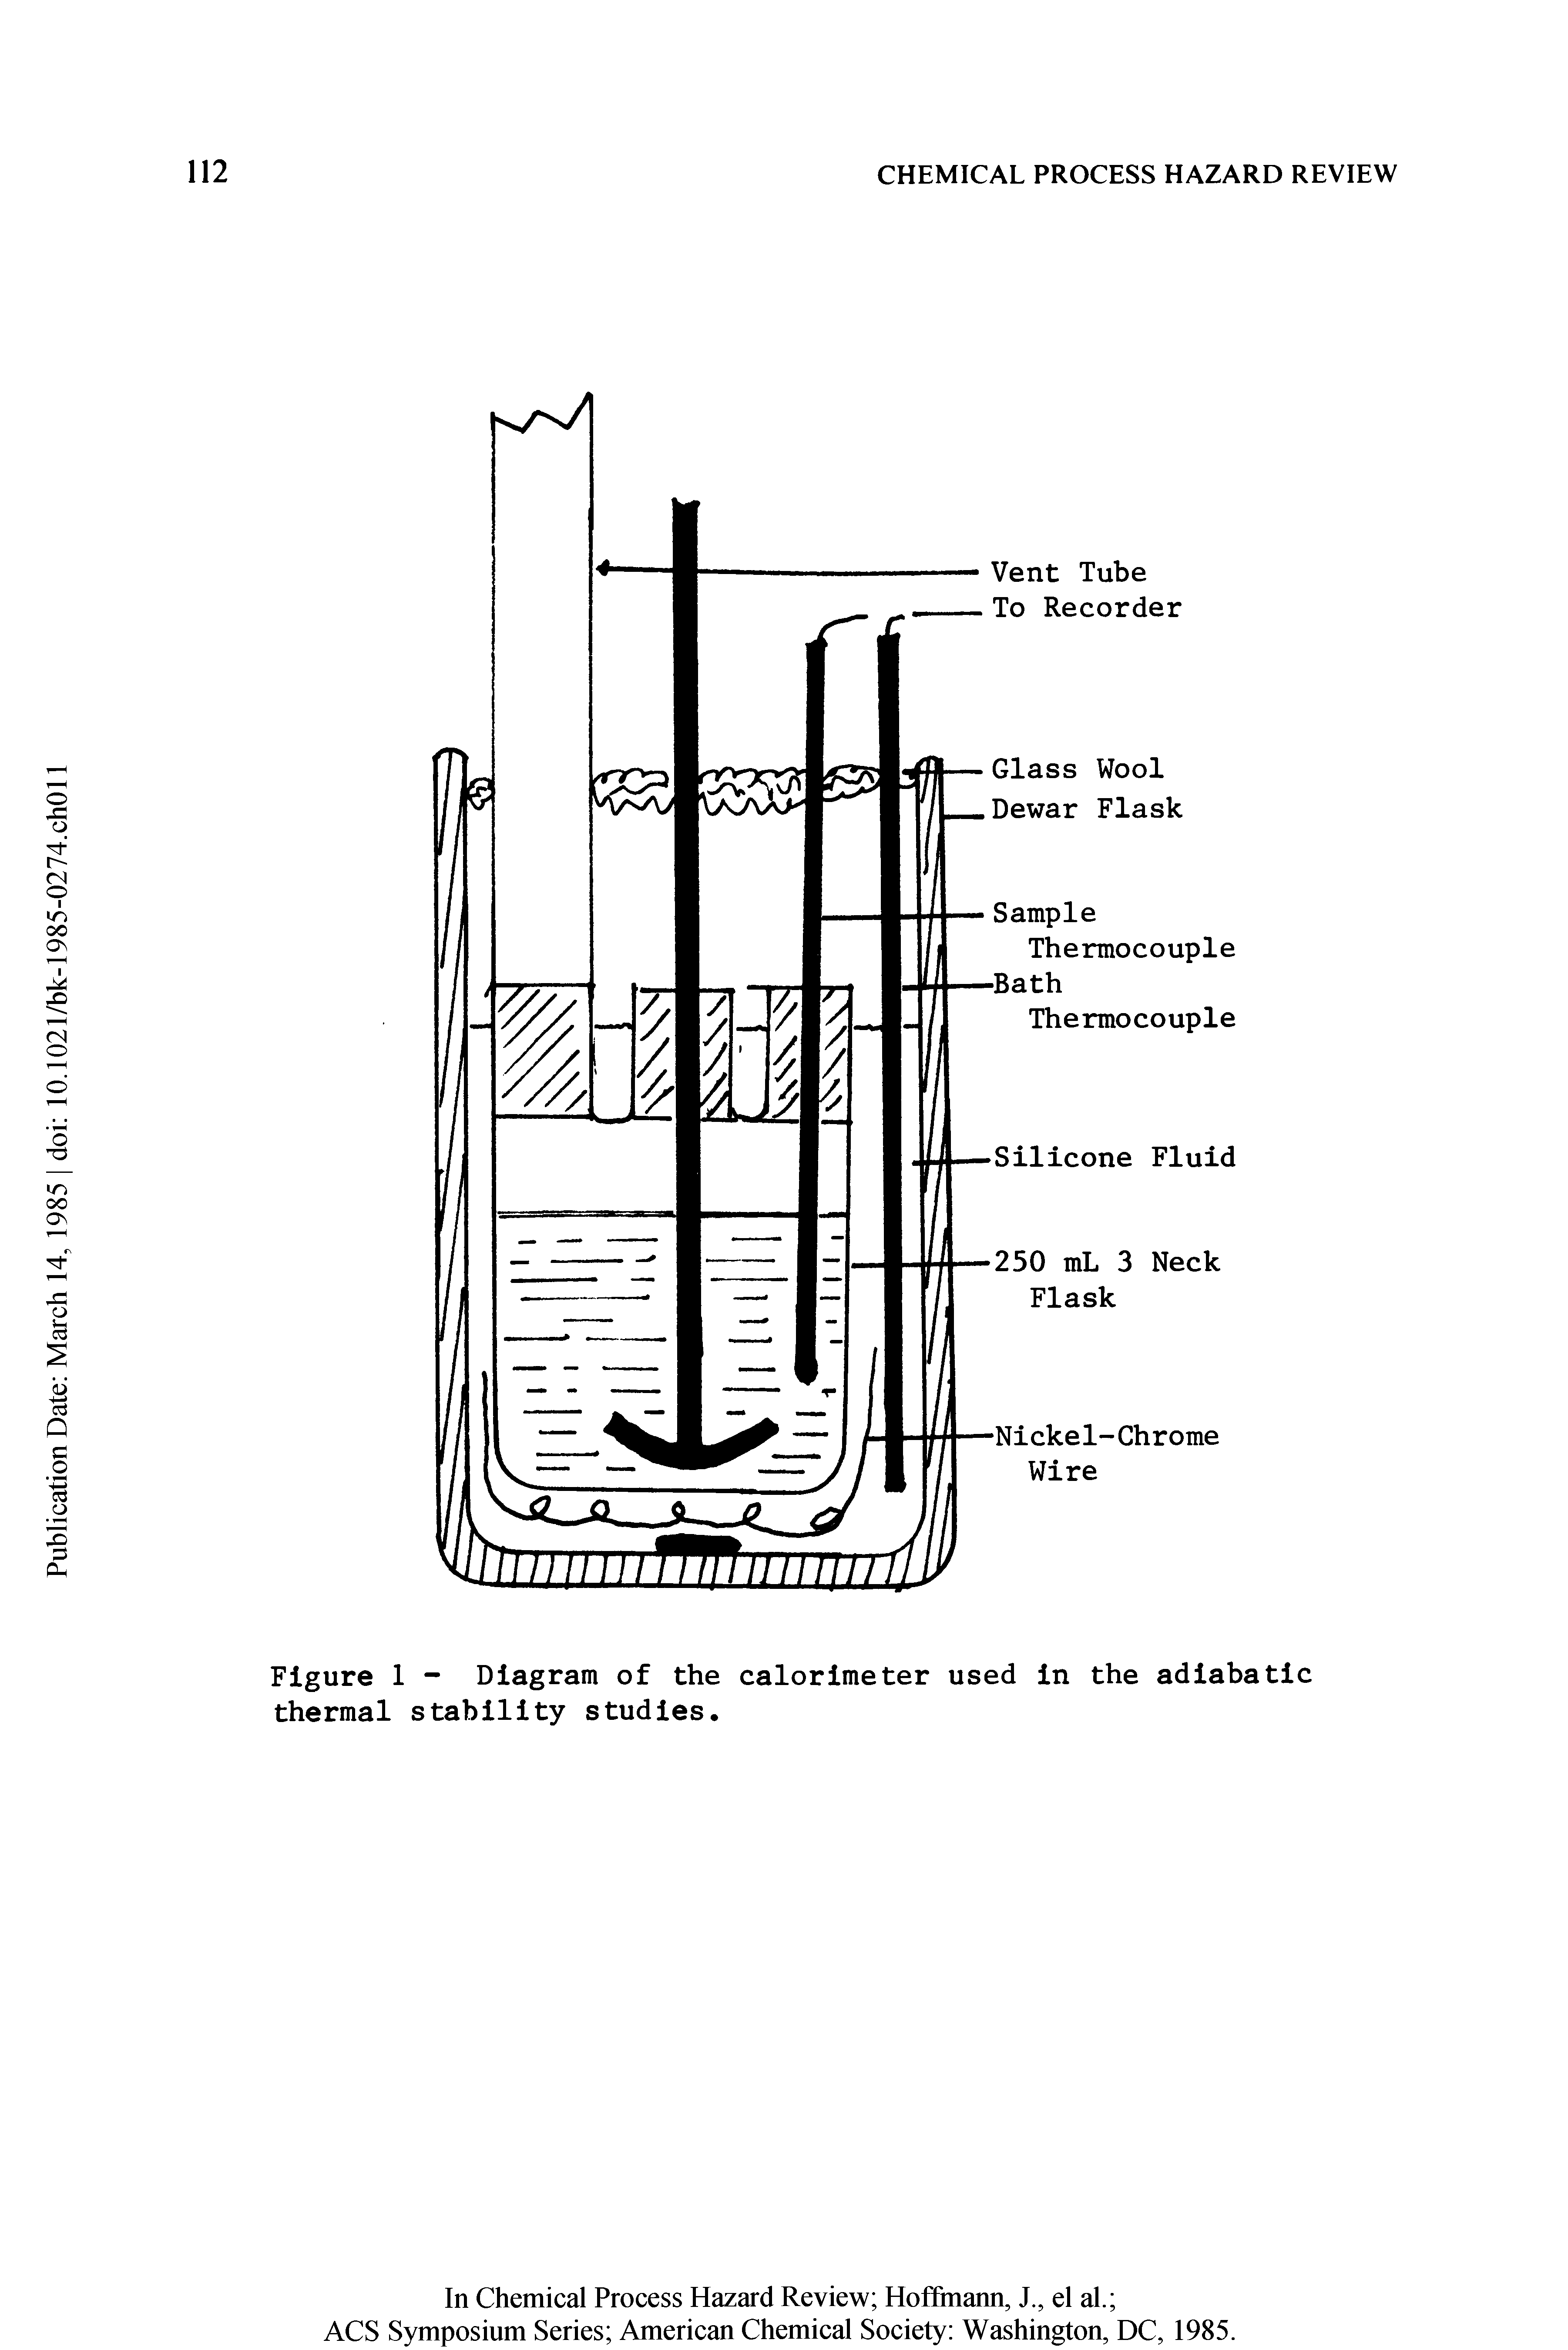 Figure 1 - Diagram of the calorimeter used in the adiabatic thermal stability studies.